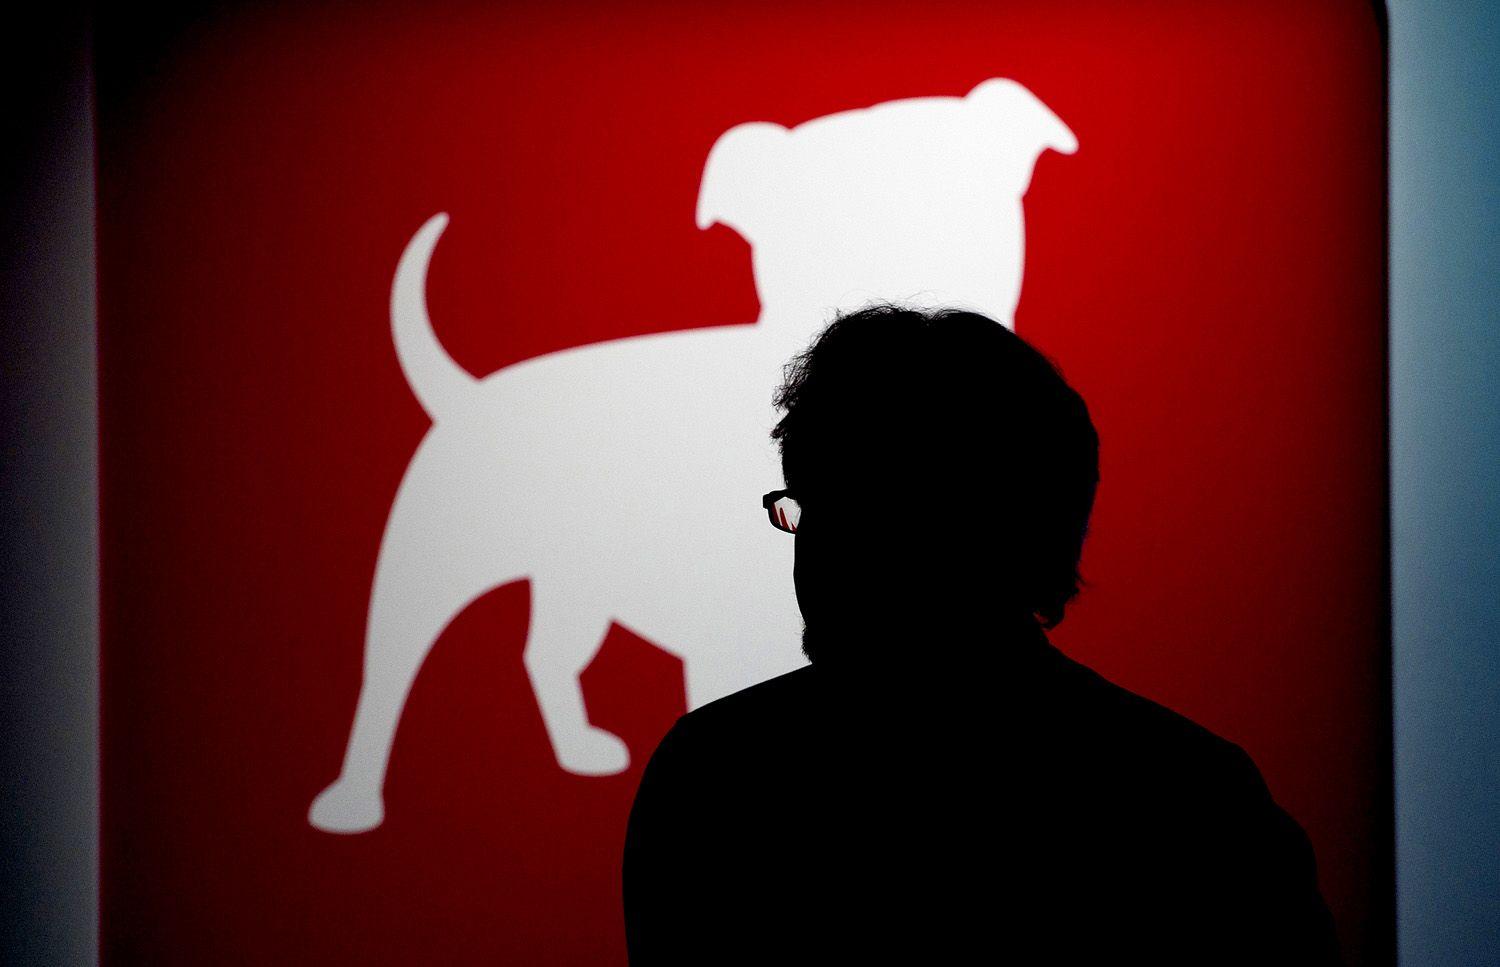 Red and White Dog Logo - Red dog Logos